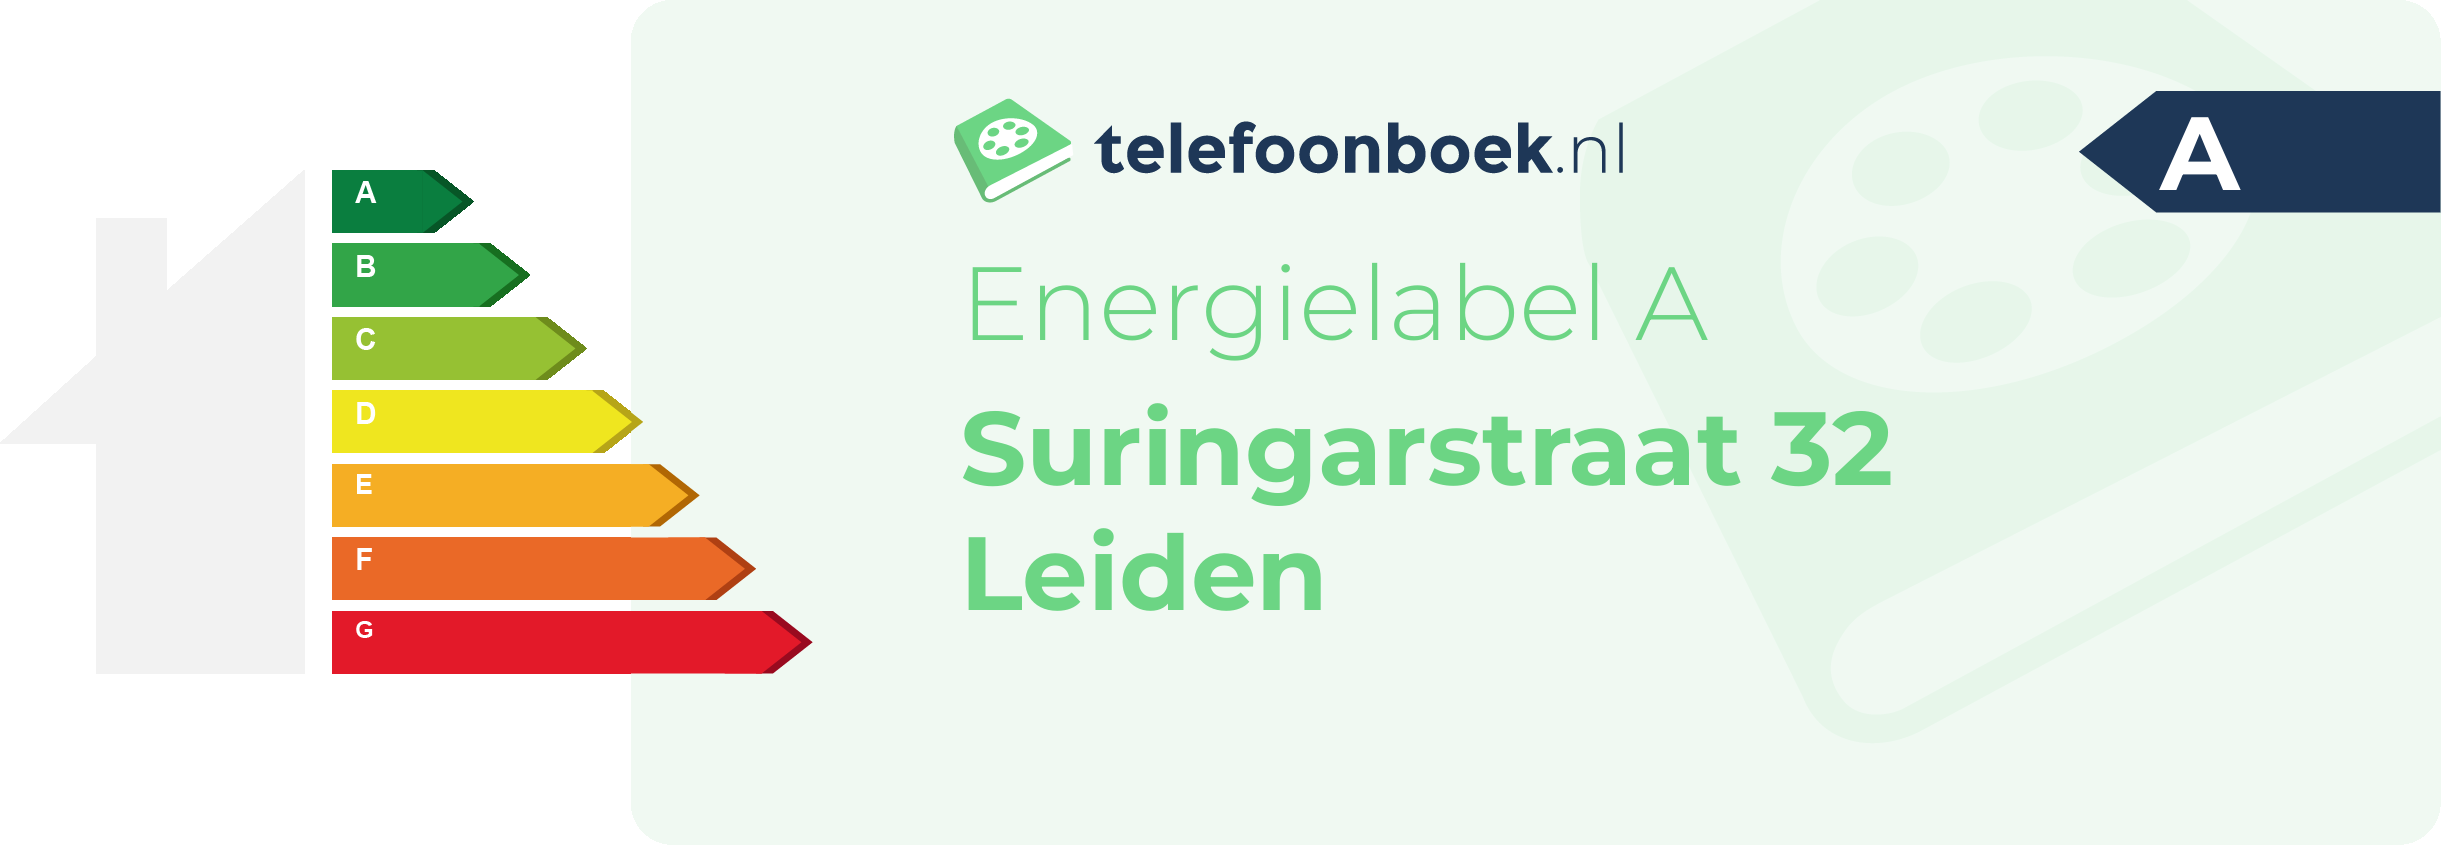 Energielabel Suringarstraat 32 Leiden